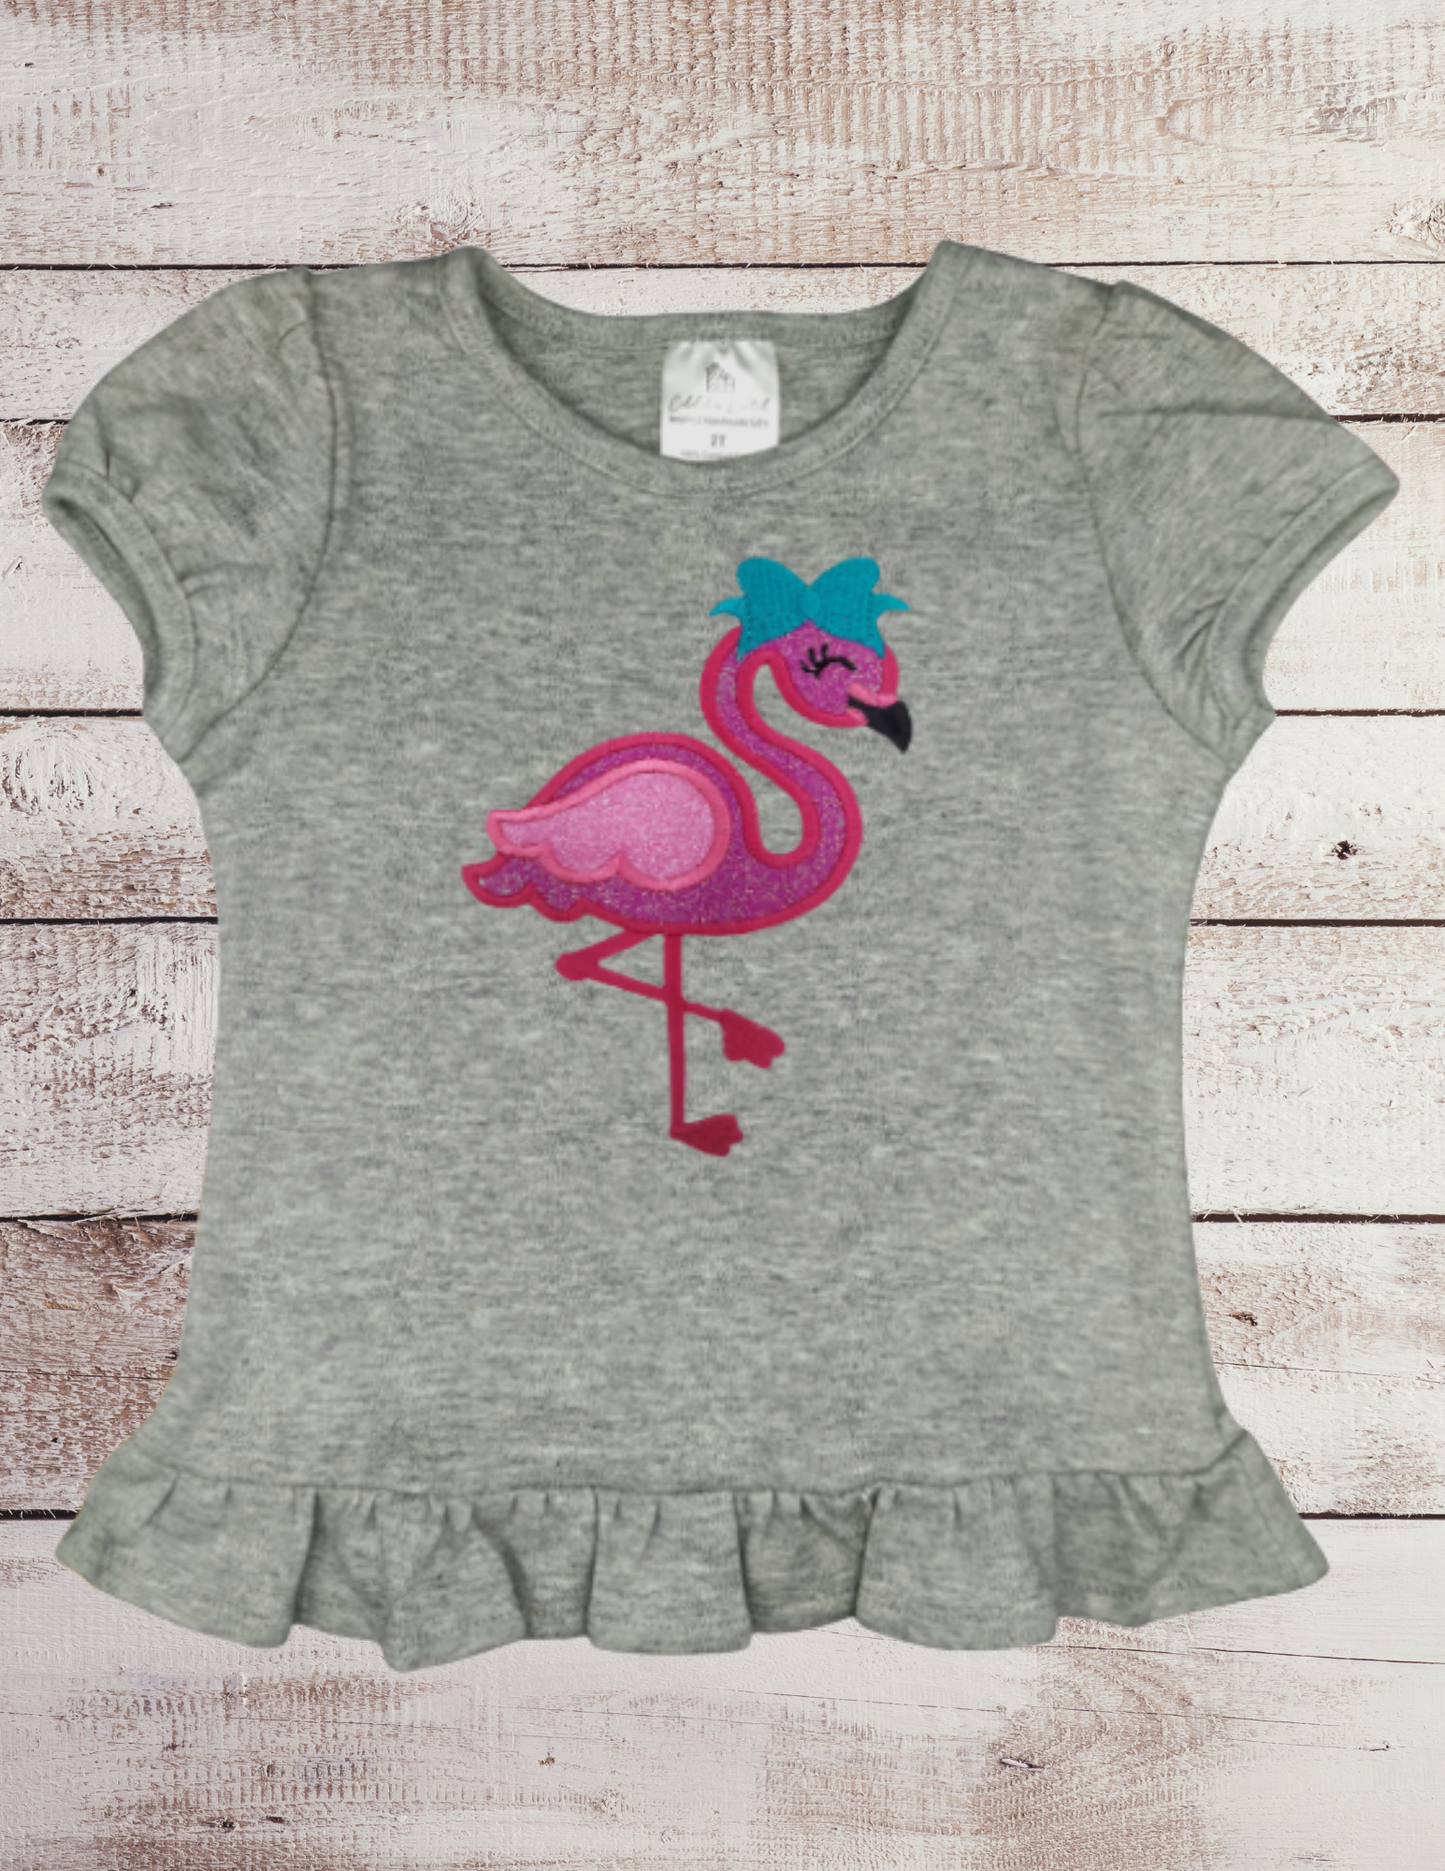 Flamingo - Toddler Top